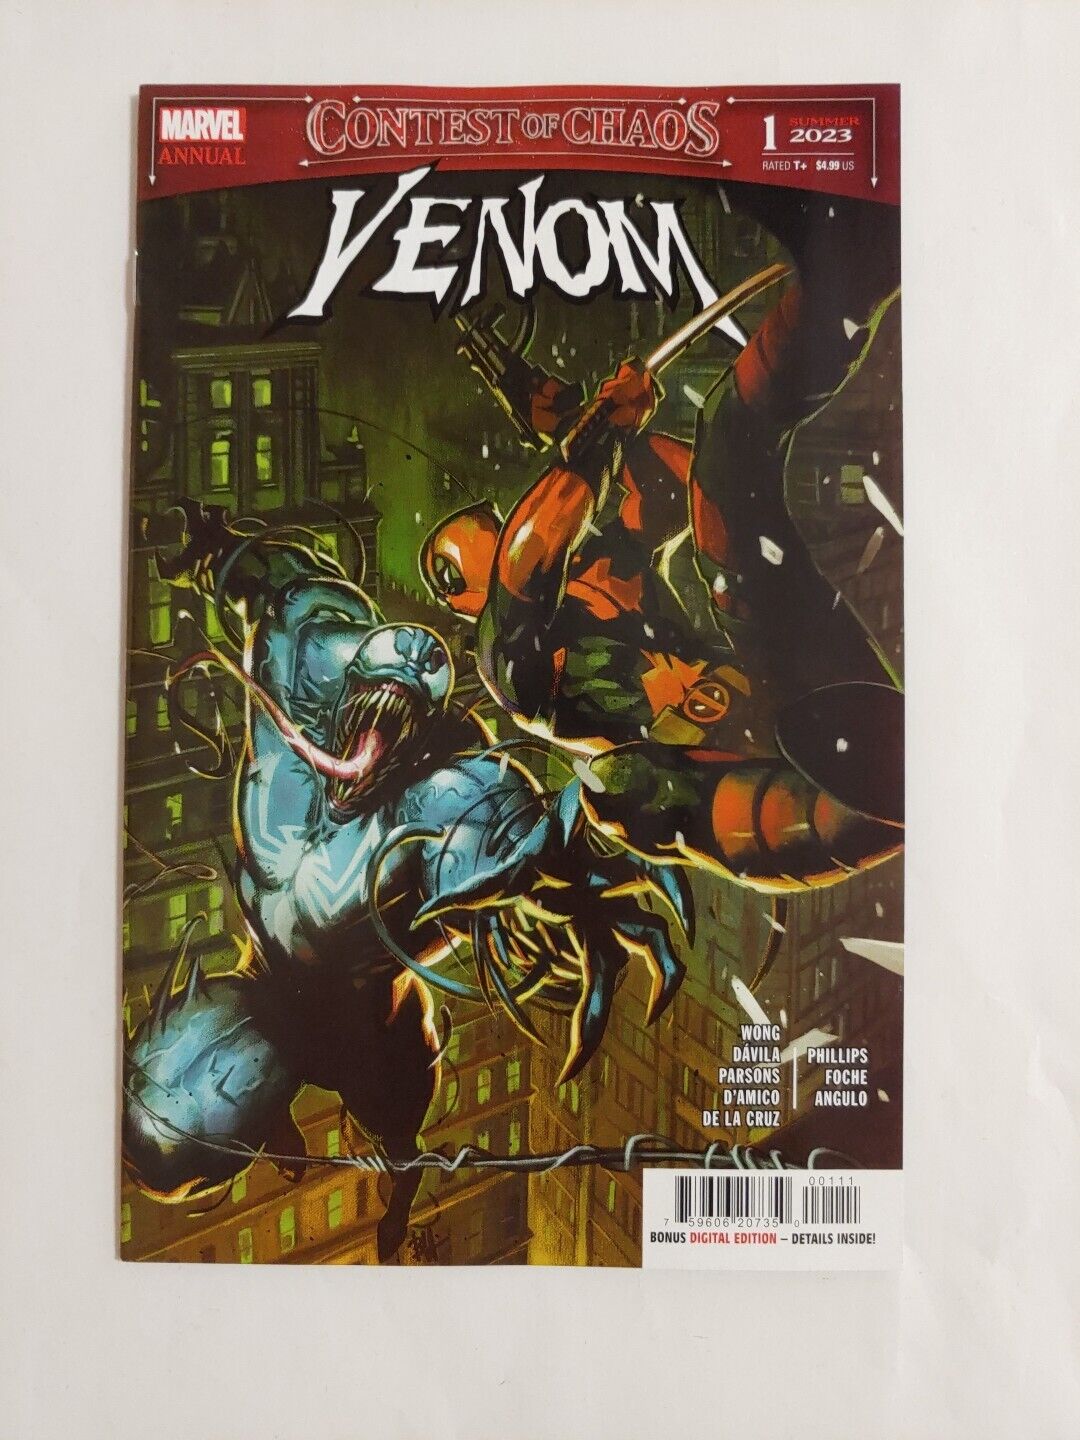 Venom Annual #1 Contest of Chaos (Marvel 2023) Main Cover NM - New & Unread